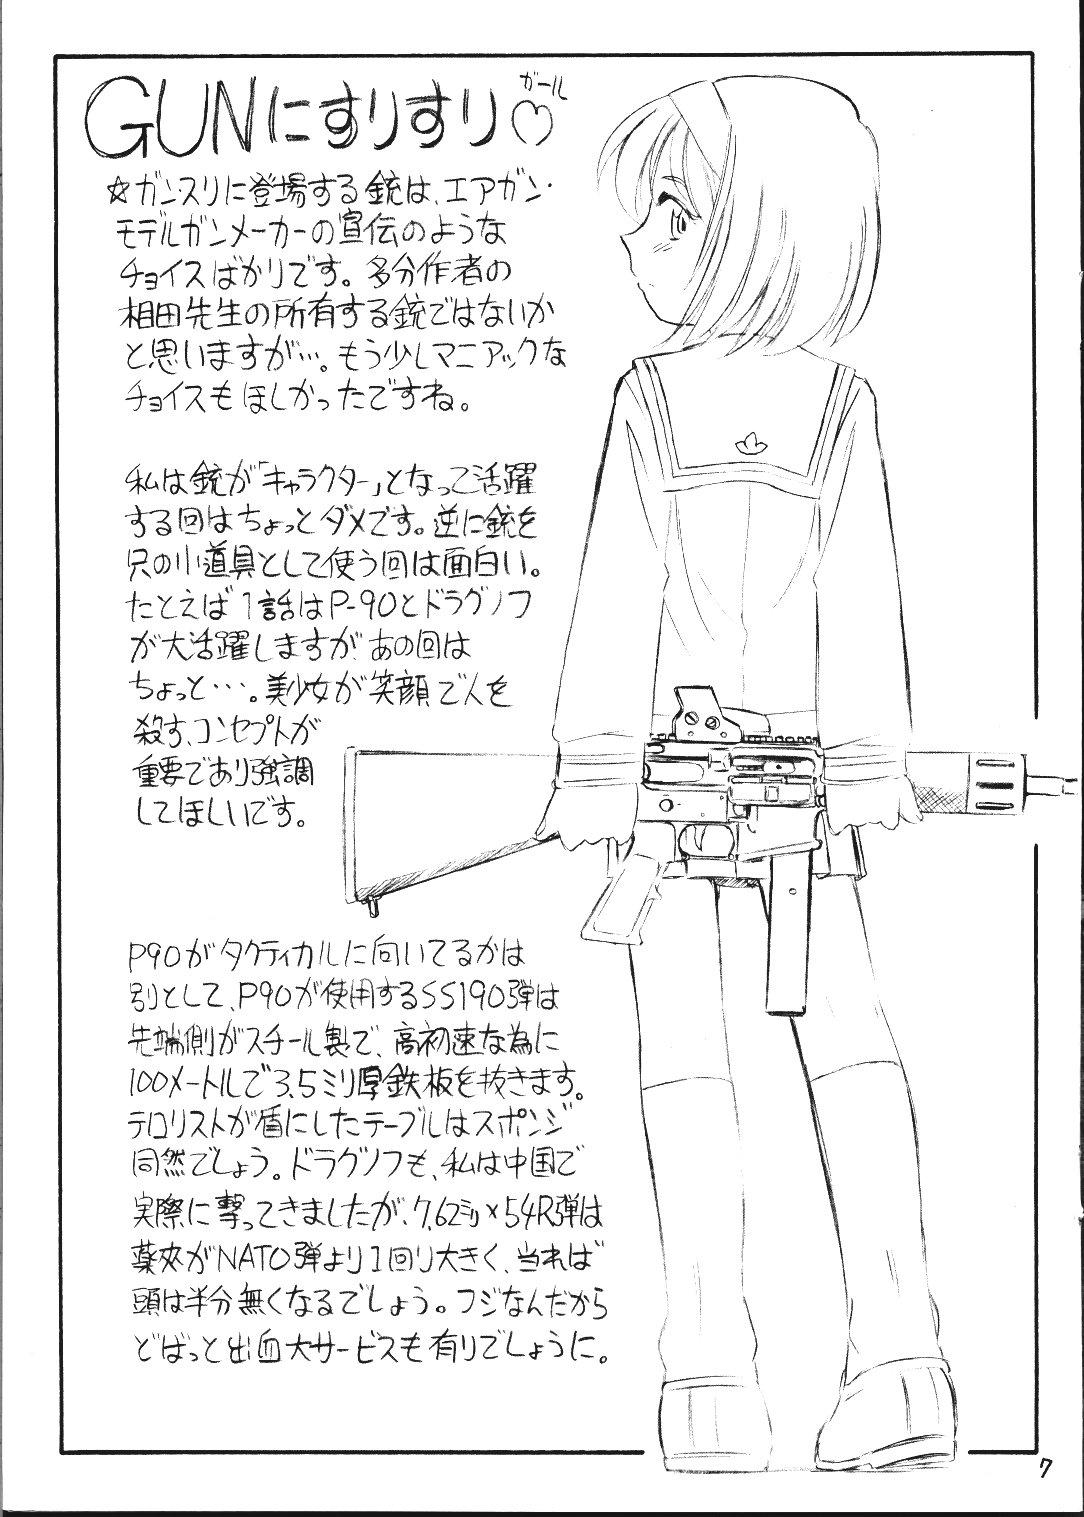 Spycam Gunnisurisurisuru Girl - Gunslinger girl Casero - Page 7